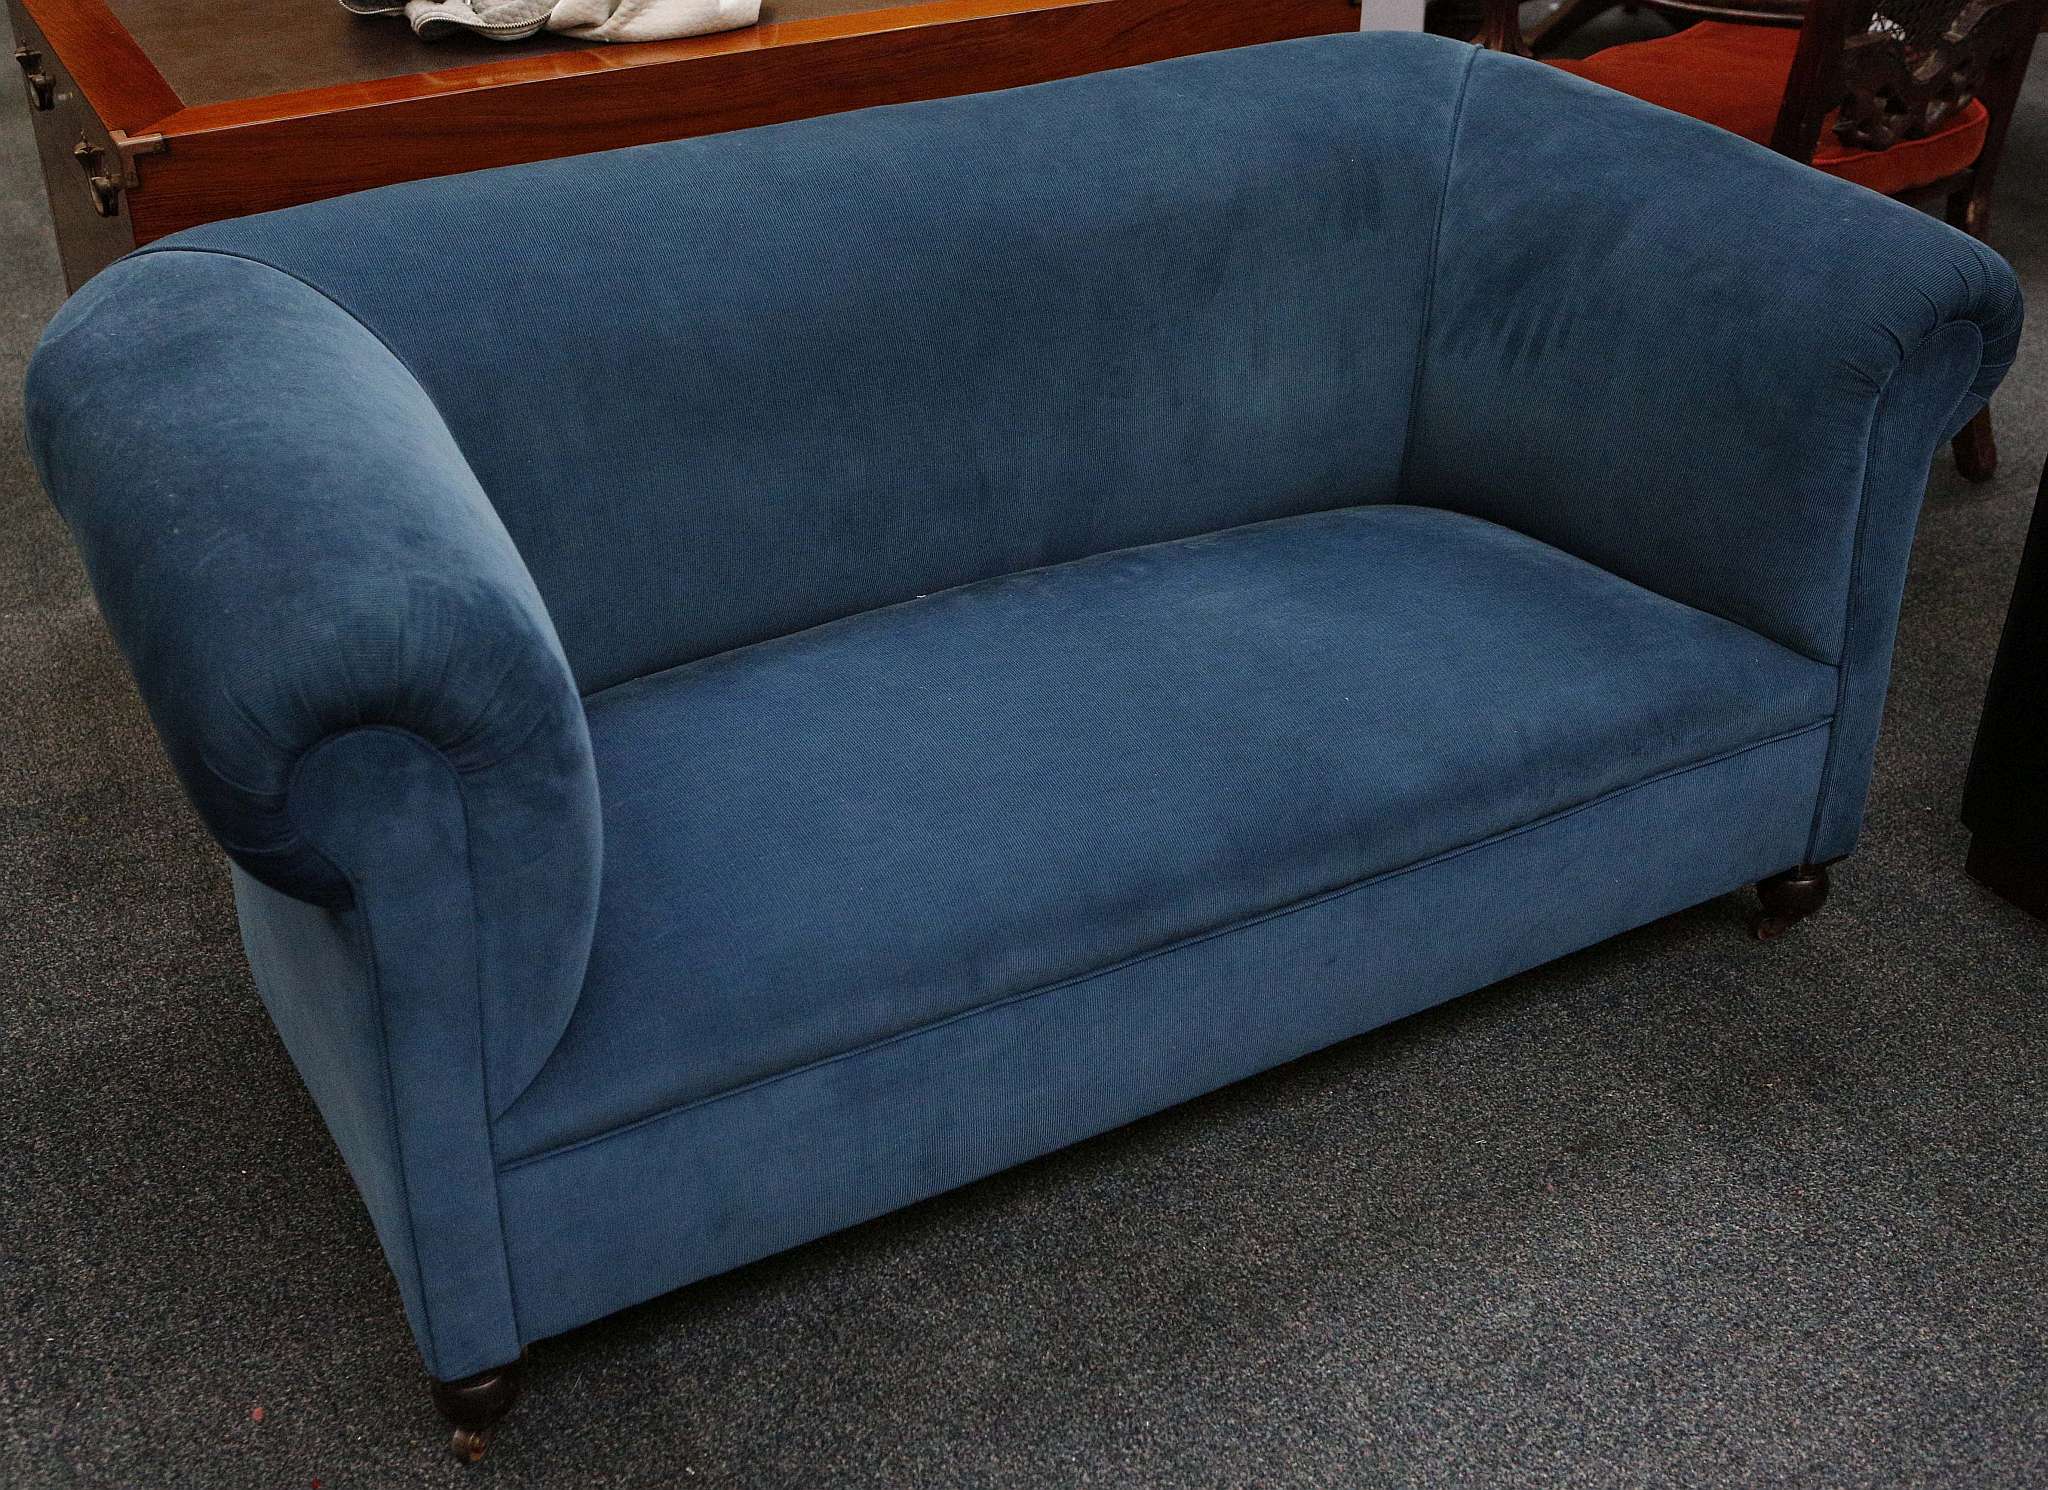 An Edwardian blue velvet upholstered sofa, raised on bun feet.